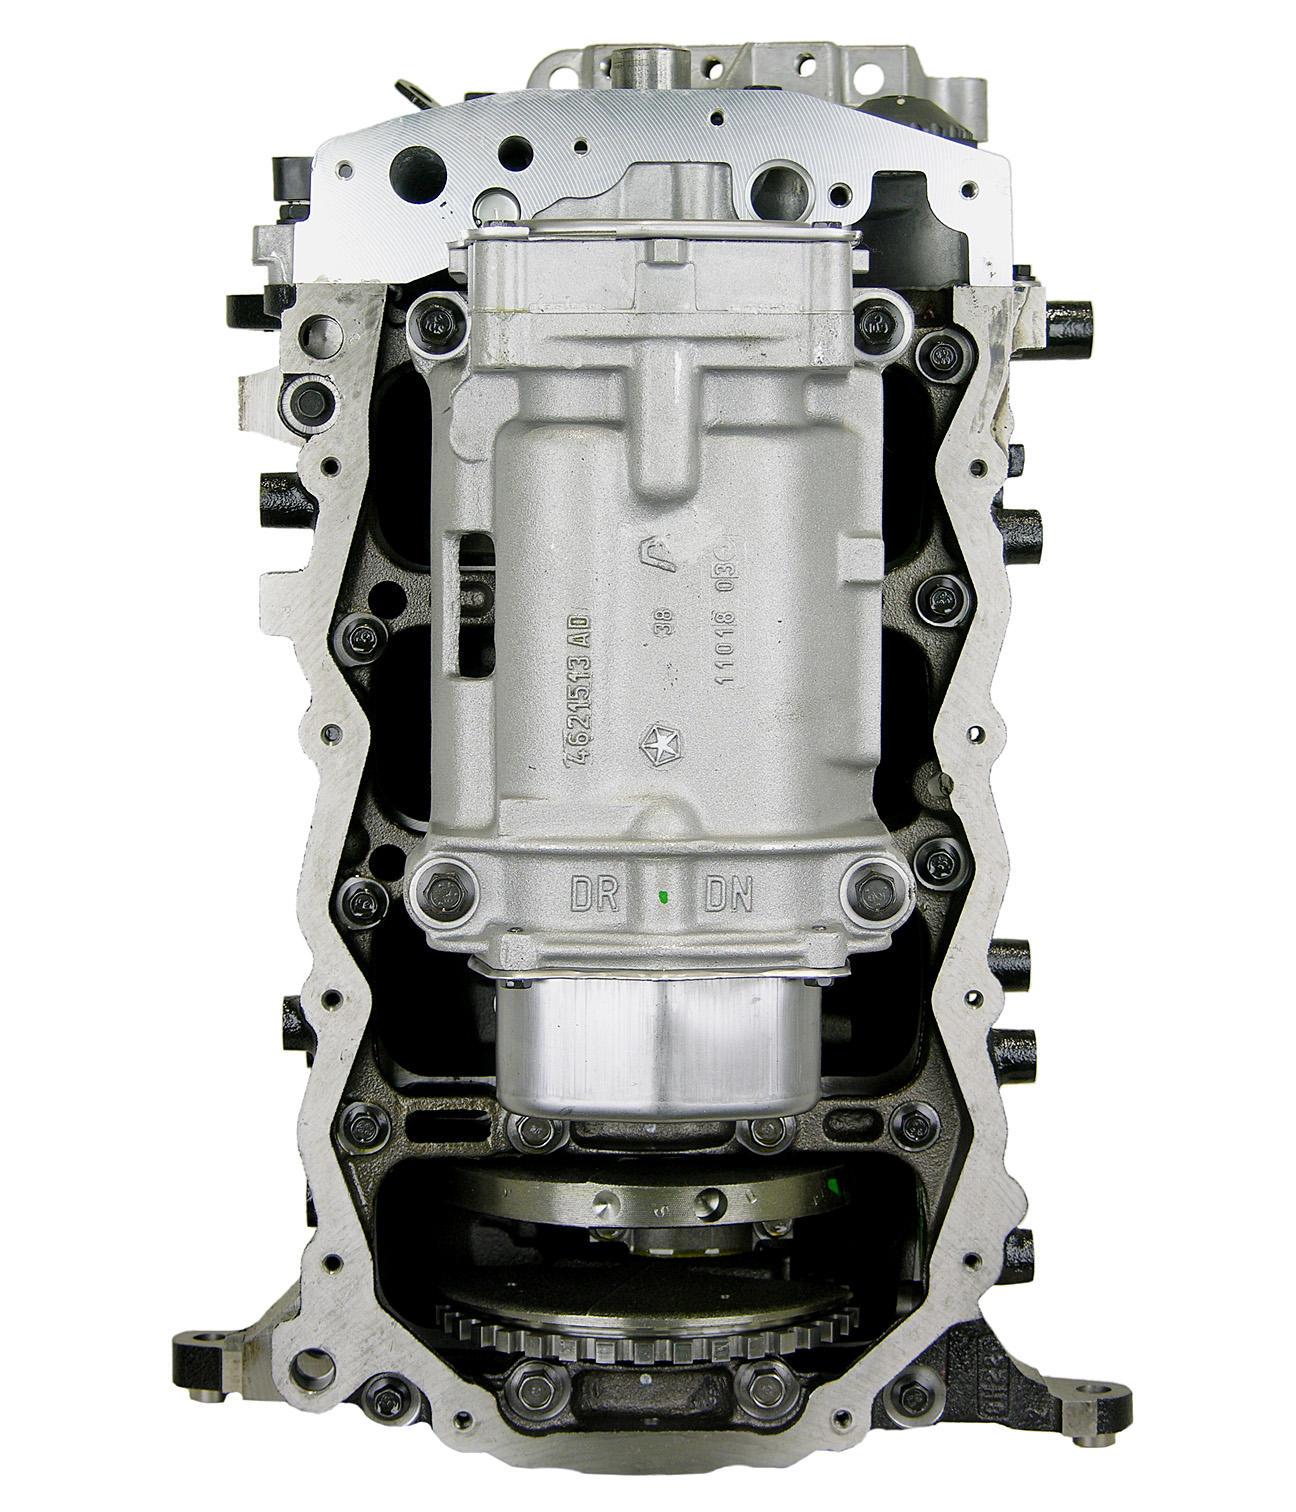 Chrysler 2.4L L4 Remanufactured Engine - 2004-2010